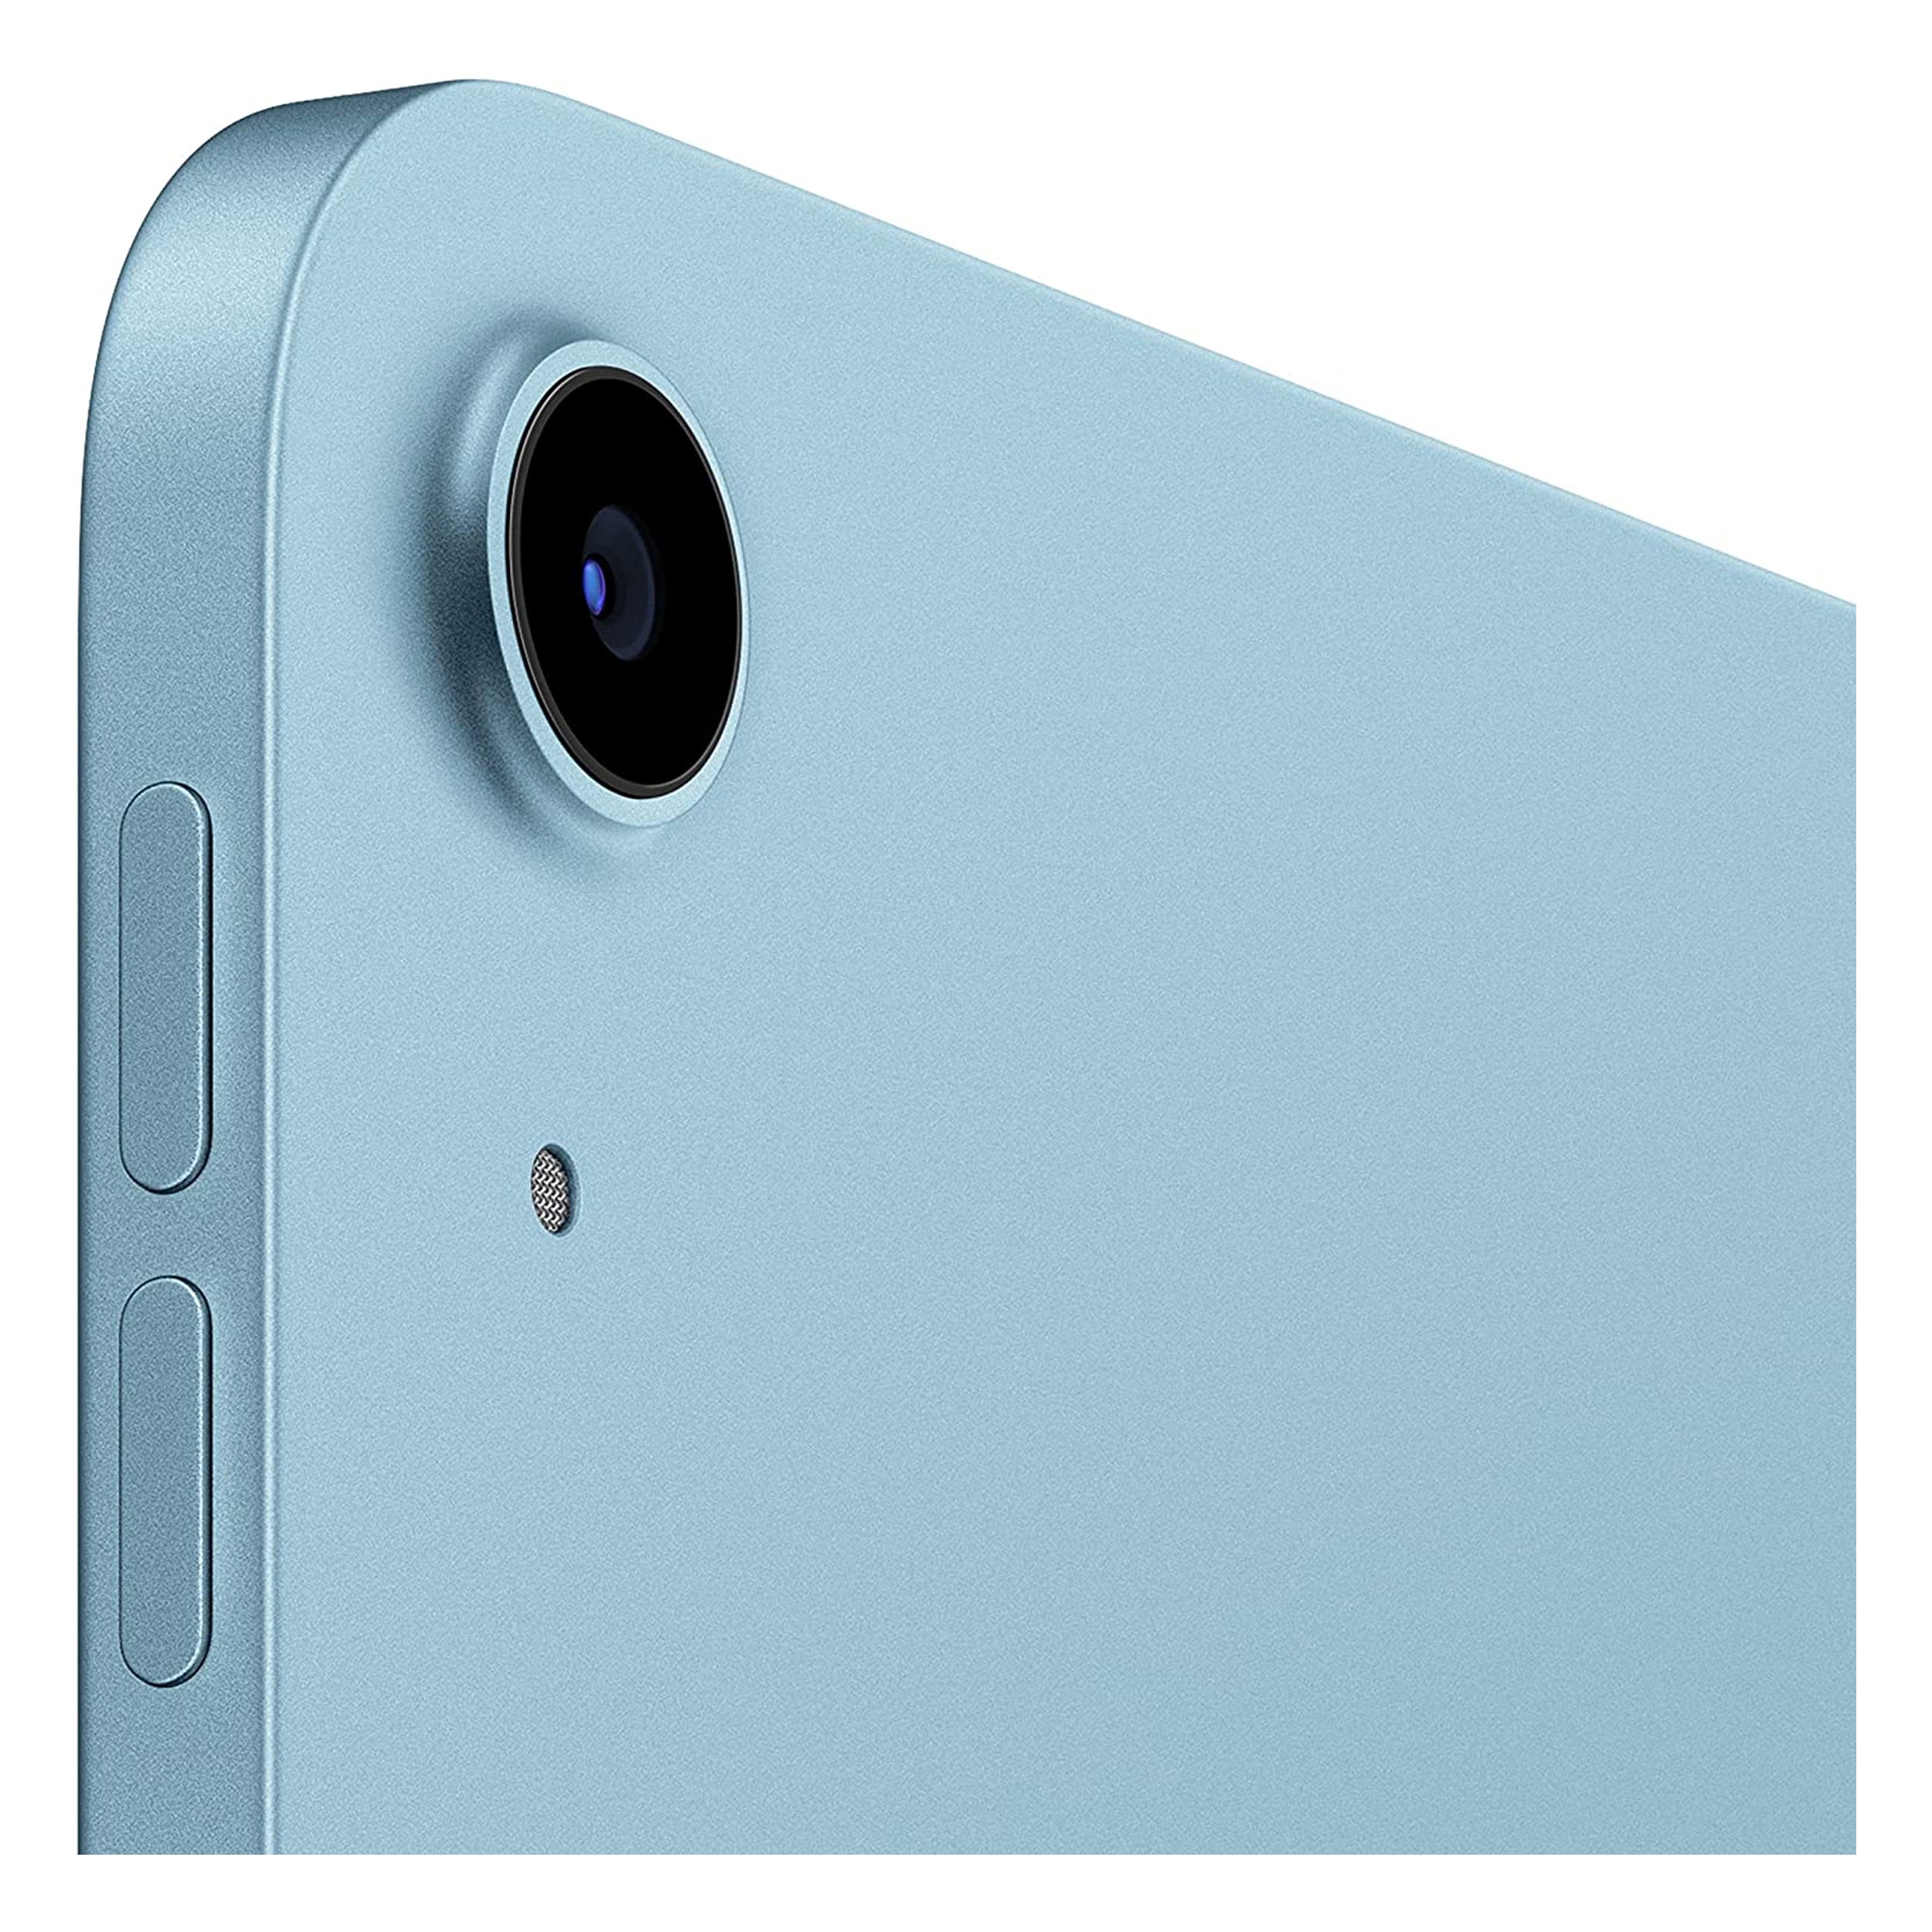 2022 Apple 10.9-inch iPad Air (Wi-Fi + Cellular, 64GB) - Blue (5th Generation)